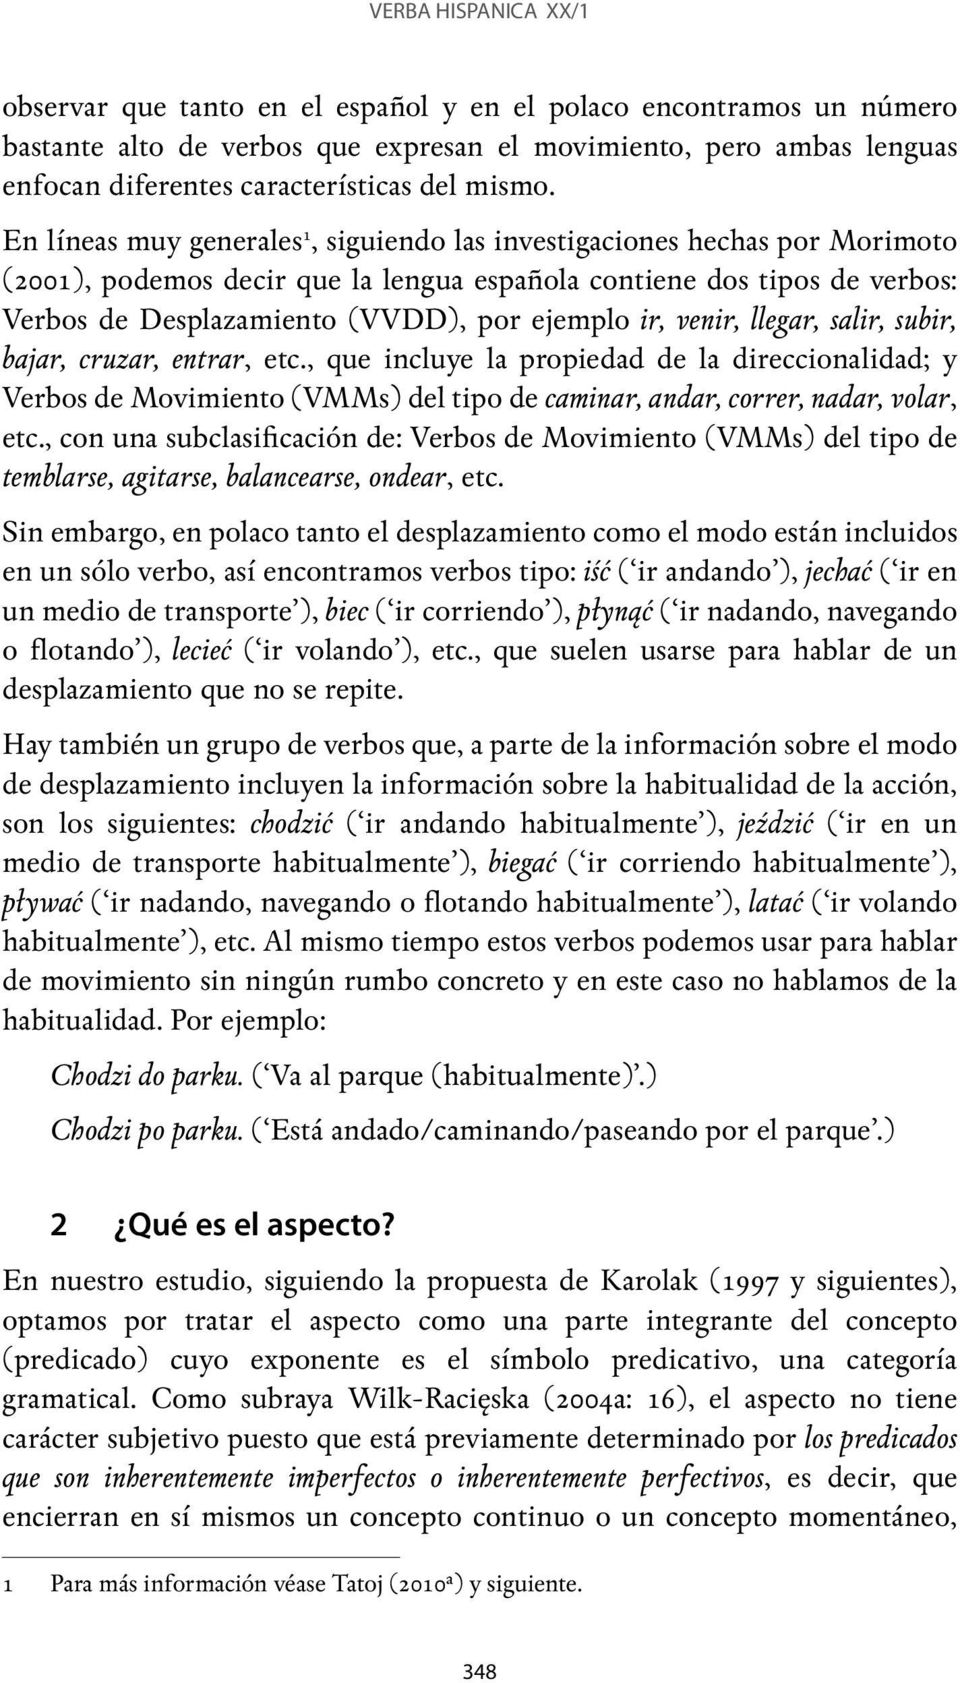 En líneas muy generales 1, siguiendo las investigaciones hechas por Morimoto (2001), podemos decir que la lengua española contiene dos tipos de verbos: Verbos de Desplazamiento (VVDD), por ejemplo